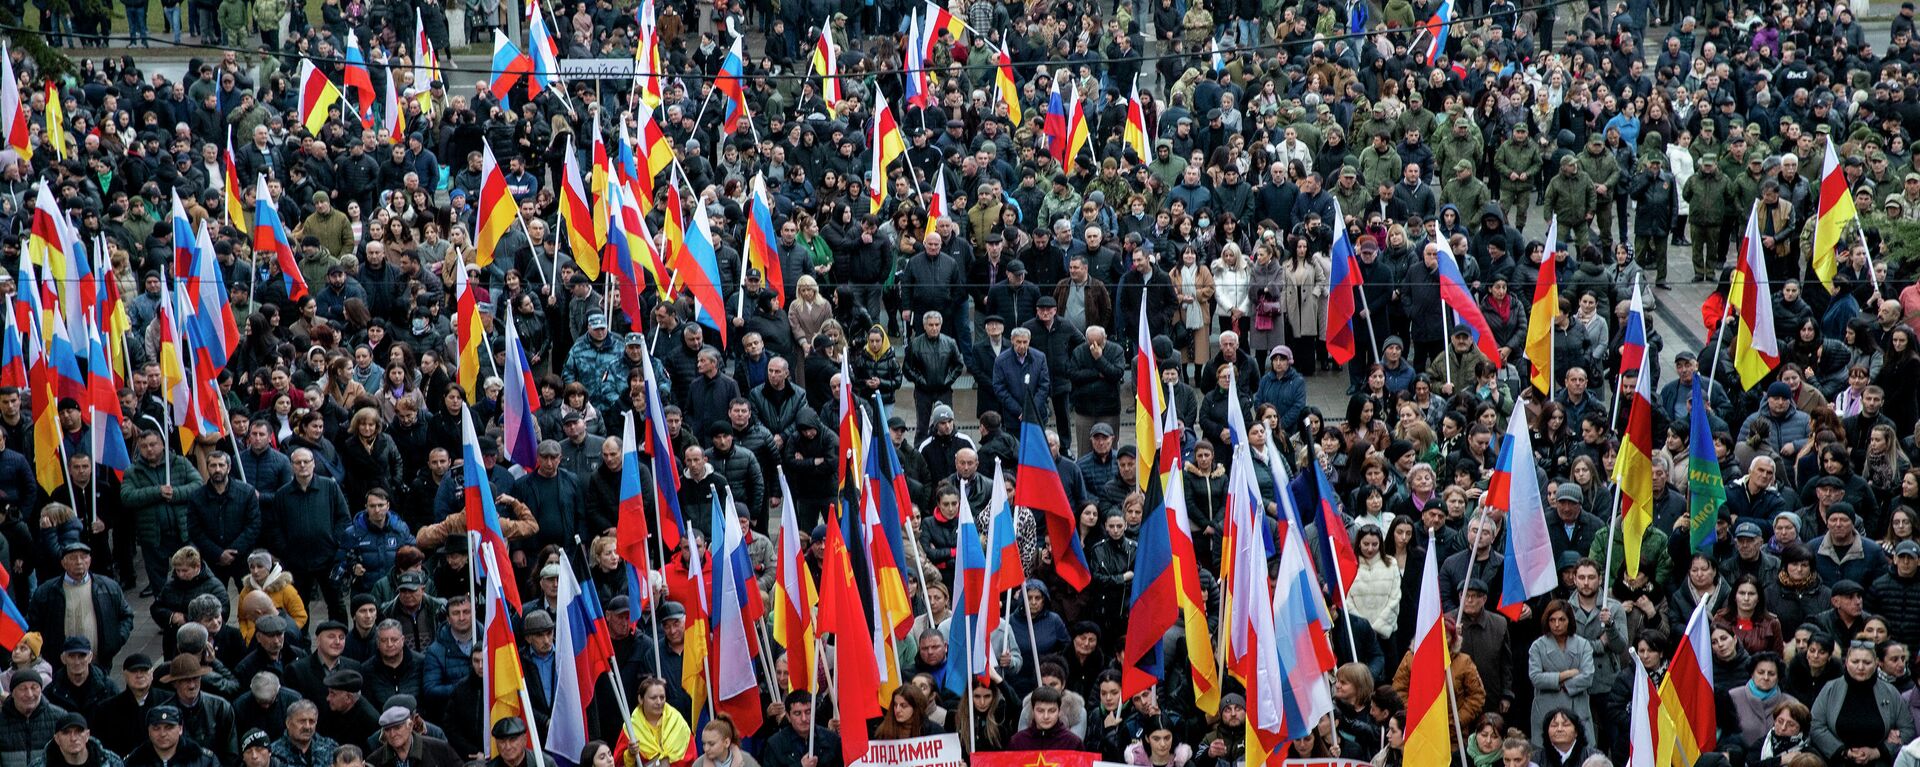 Митинг в столице Южной Осетии в поддержку спецоперации России по защите Донбасса  - Sputnik Южная Осетия, 1920, 02.03.2022